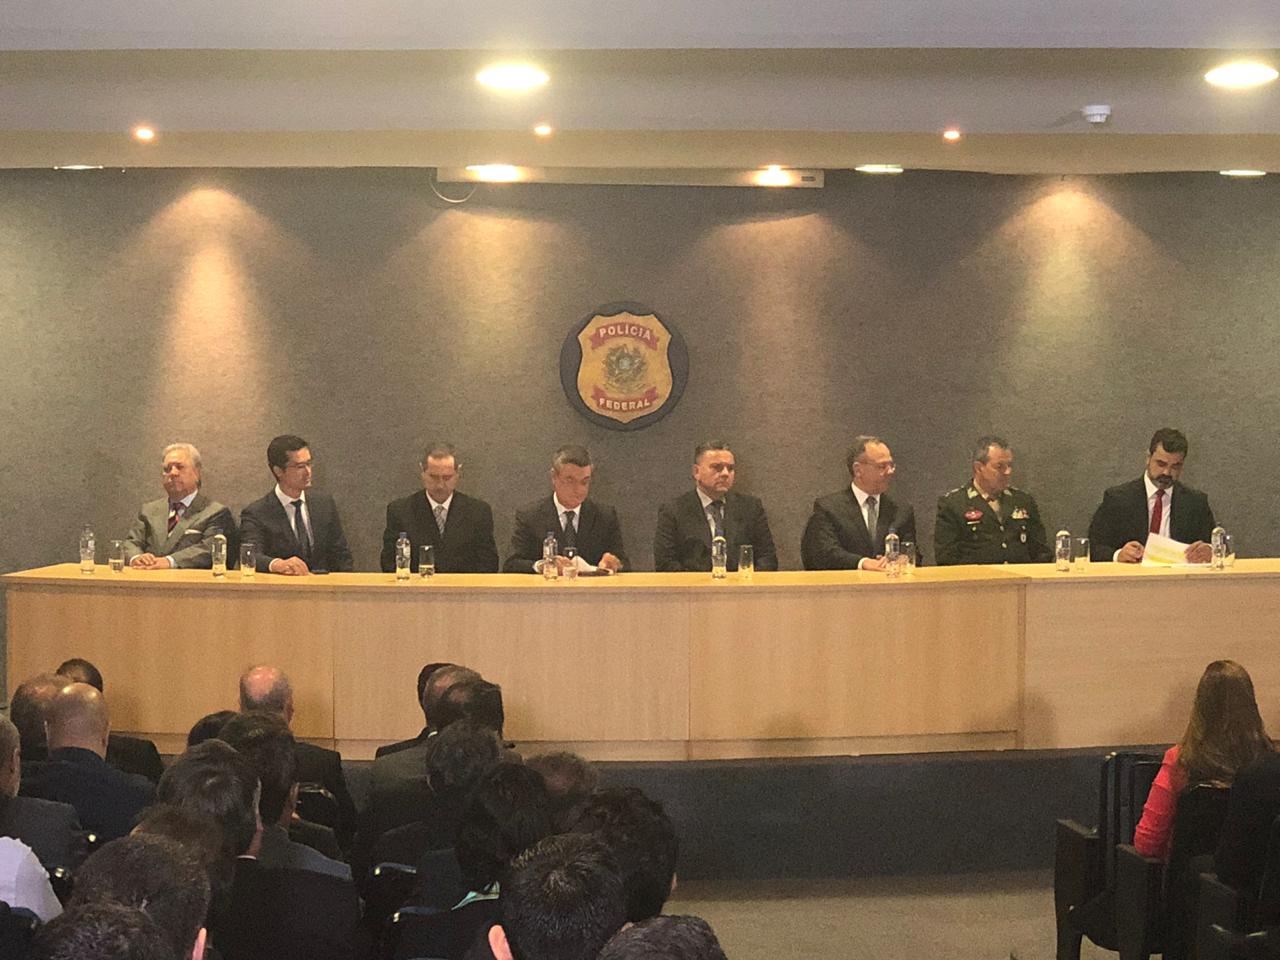  Superintendente da PF no Paraná toma posse e promete novas fases da Lava Jato em 2019